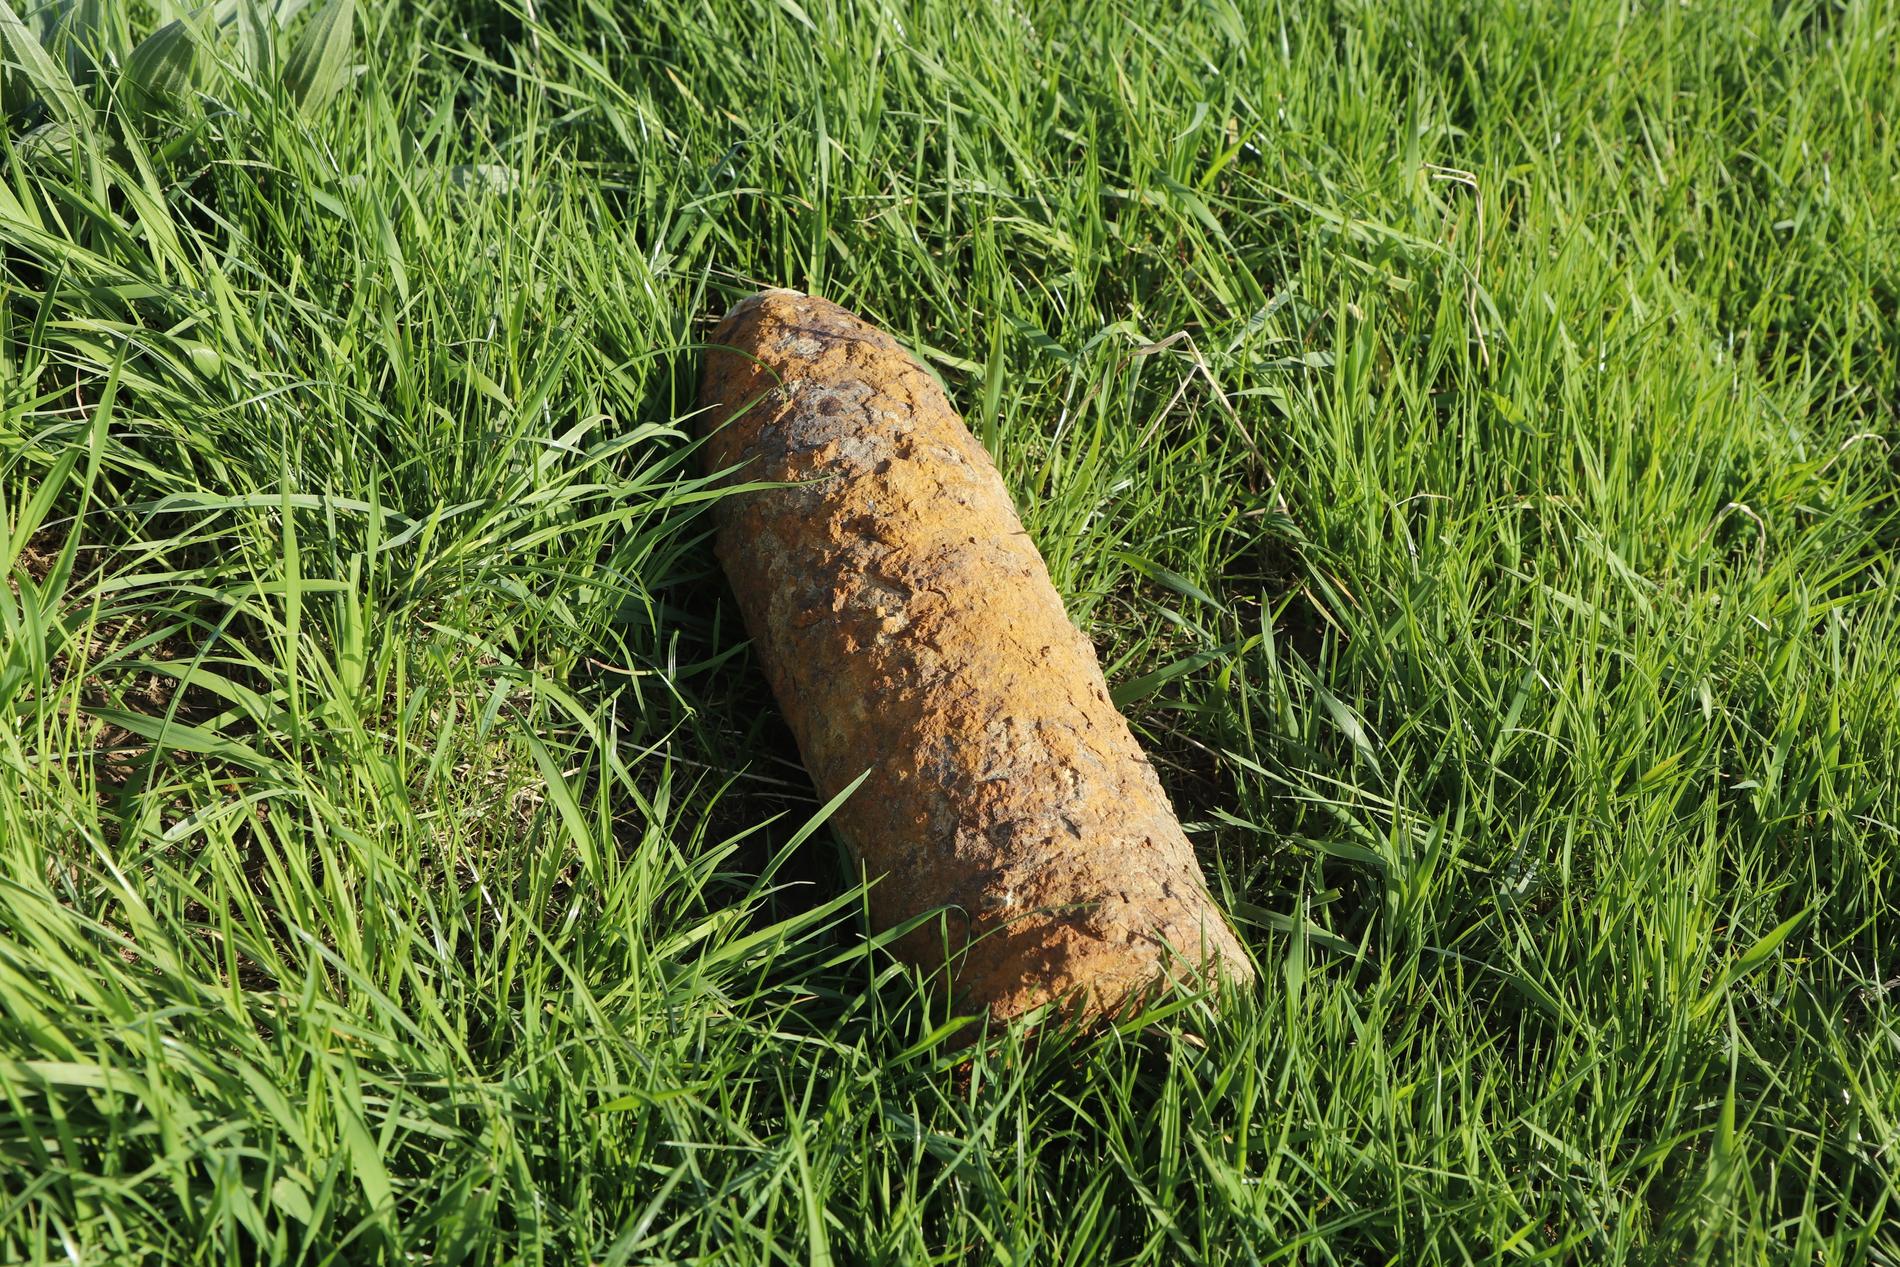 En odetonerad granat i ett dike. De farligaste granaterna är gasgranater men även spränggranater kan ibland explodera.